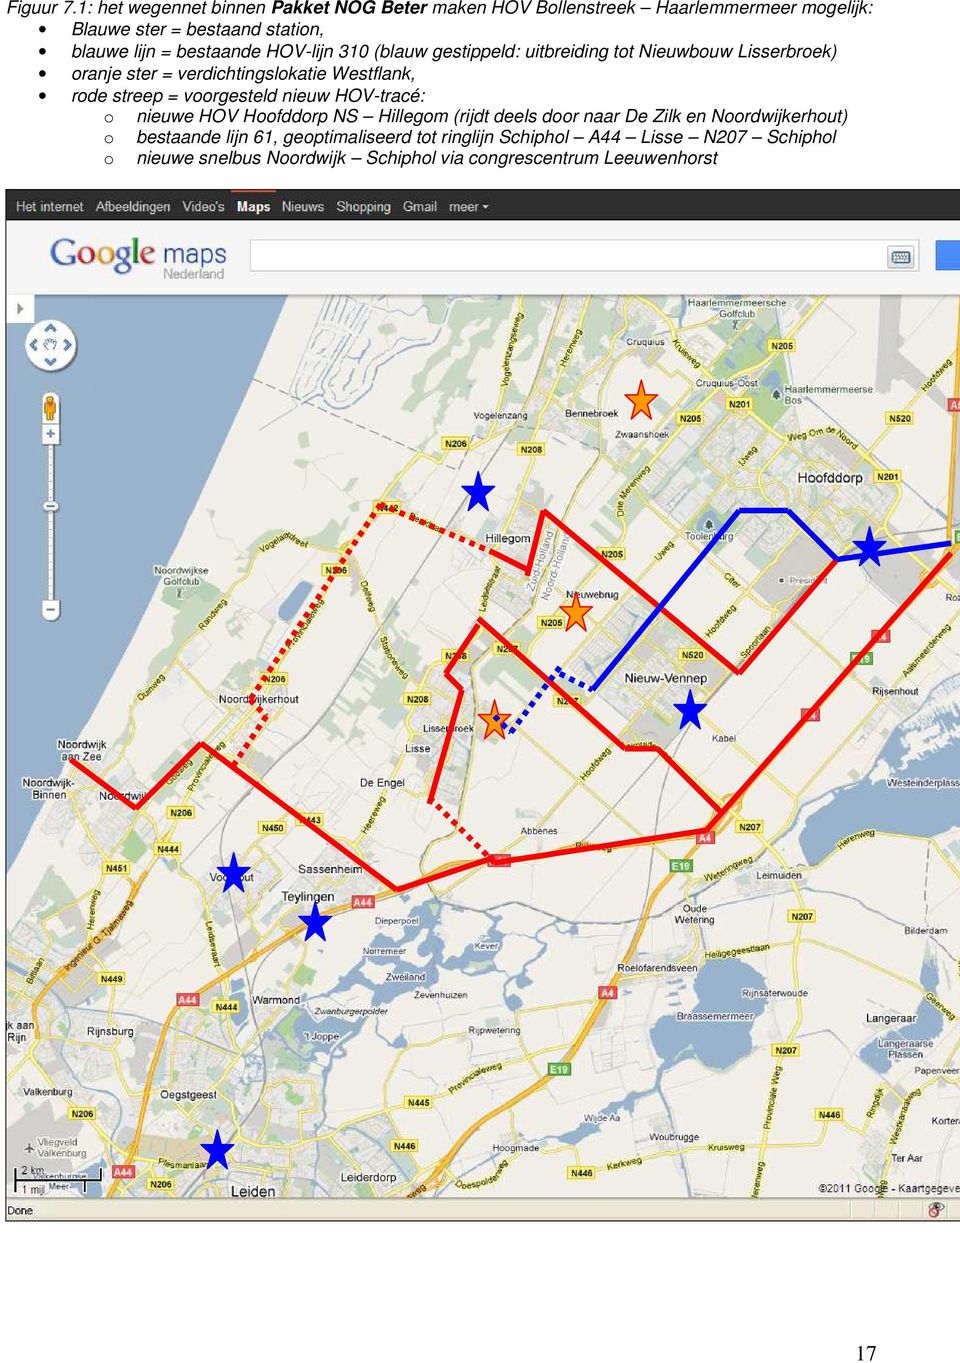 bestaande HOV-lijn 310 (blauw gestippeld: uitbreiding tot Nieuwbouw Lisserbroek) oranje ster = verdichtingslokatie Westflank, rode streep